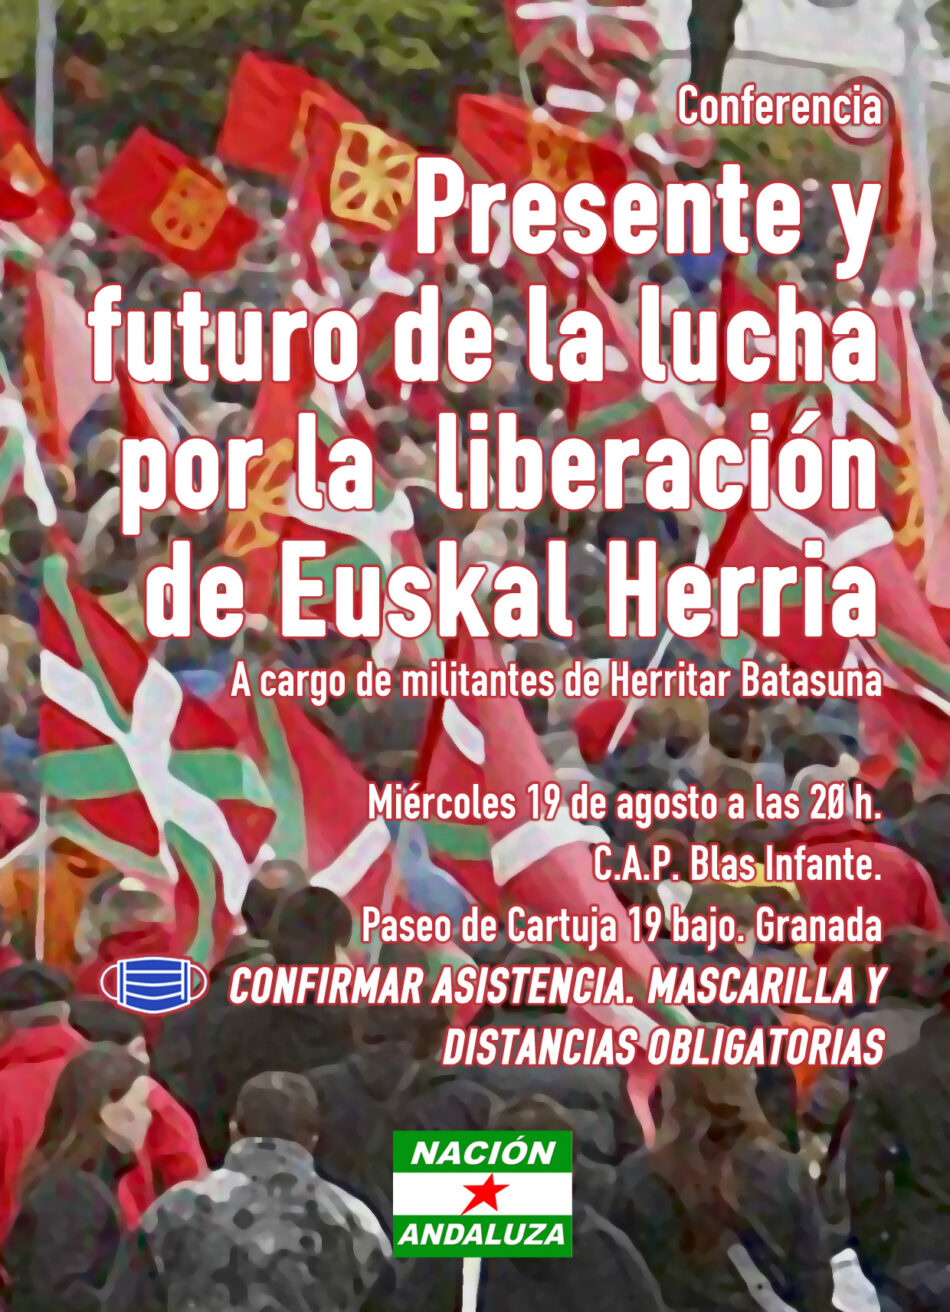 Organizan conferencia sobre el presente y el futuro de la lucha en Euskal Herria